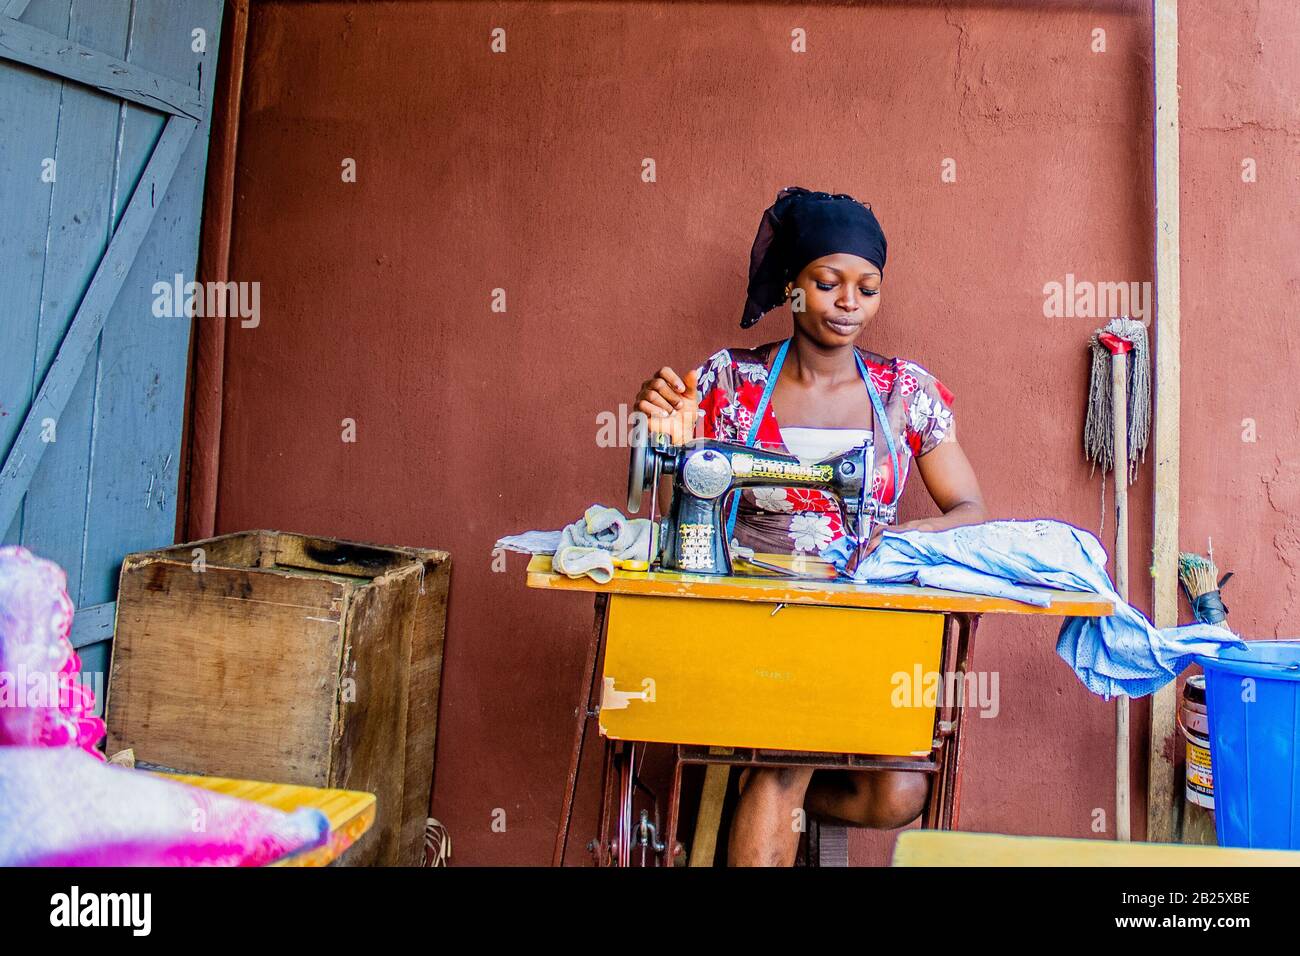 Un tailleur fait des vêtements dans son magasin dans une rue au Nigeria. Banque D'Images